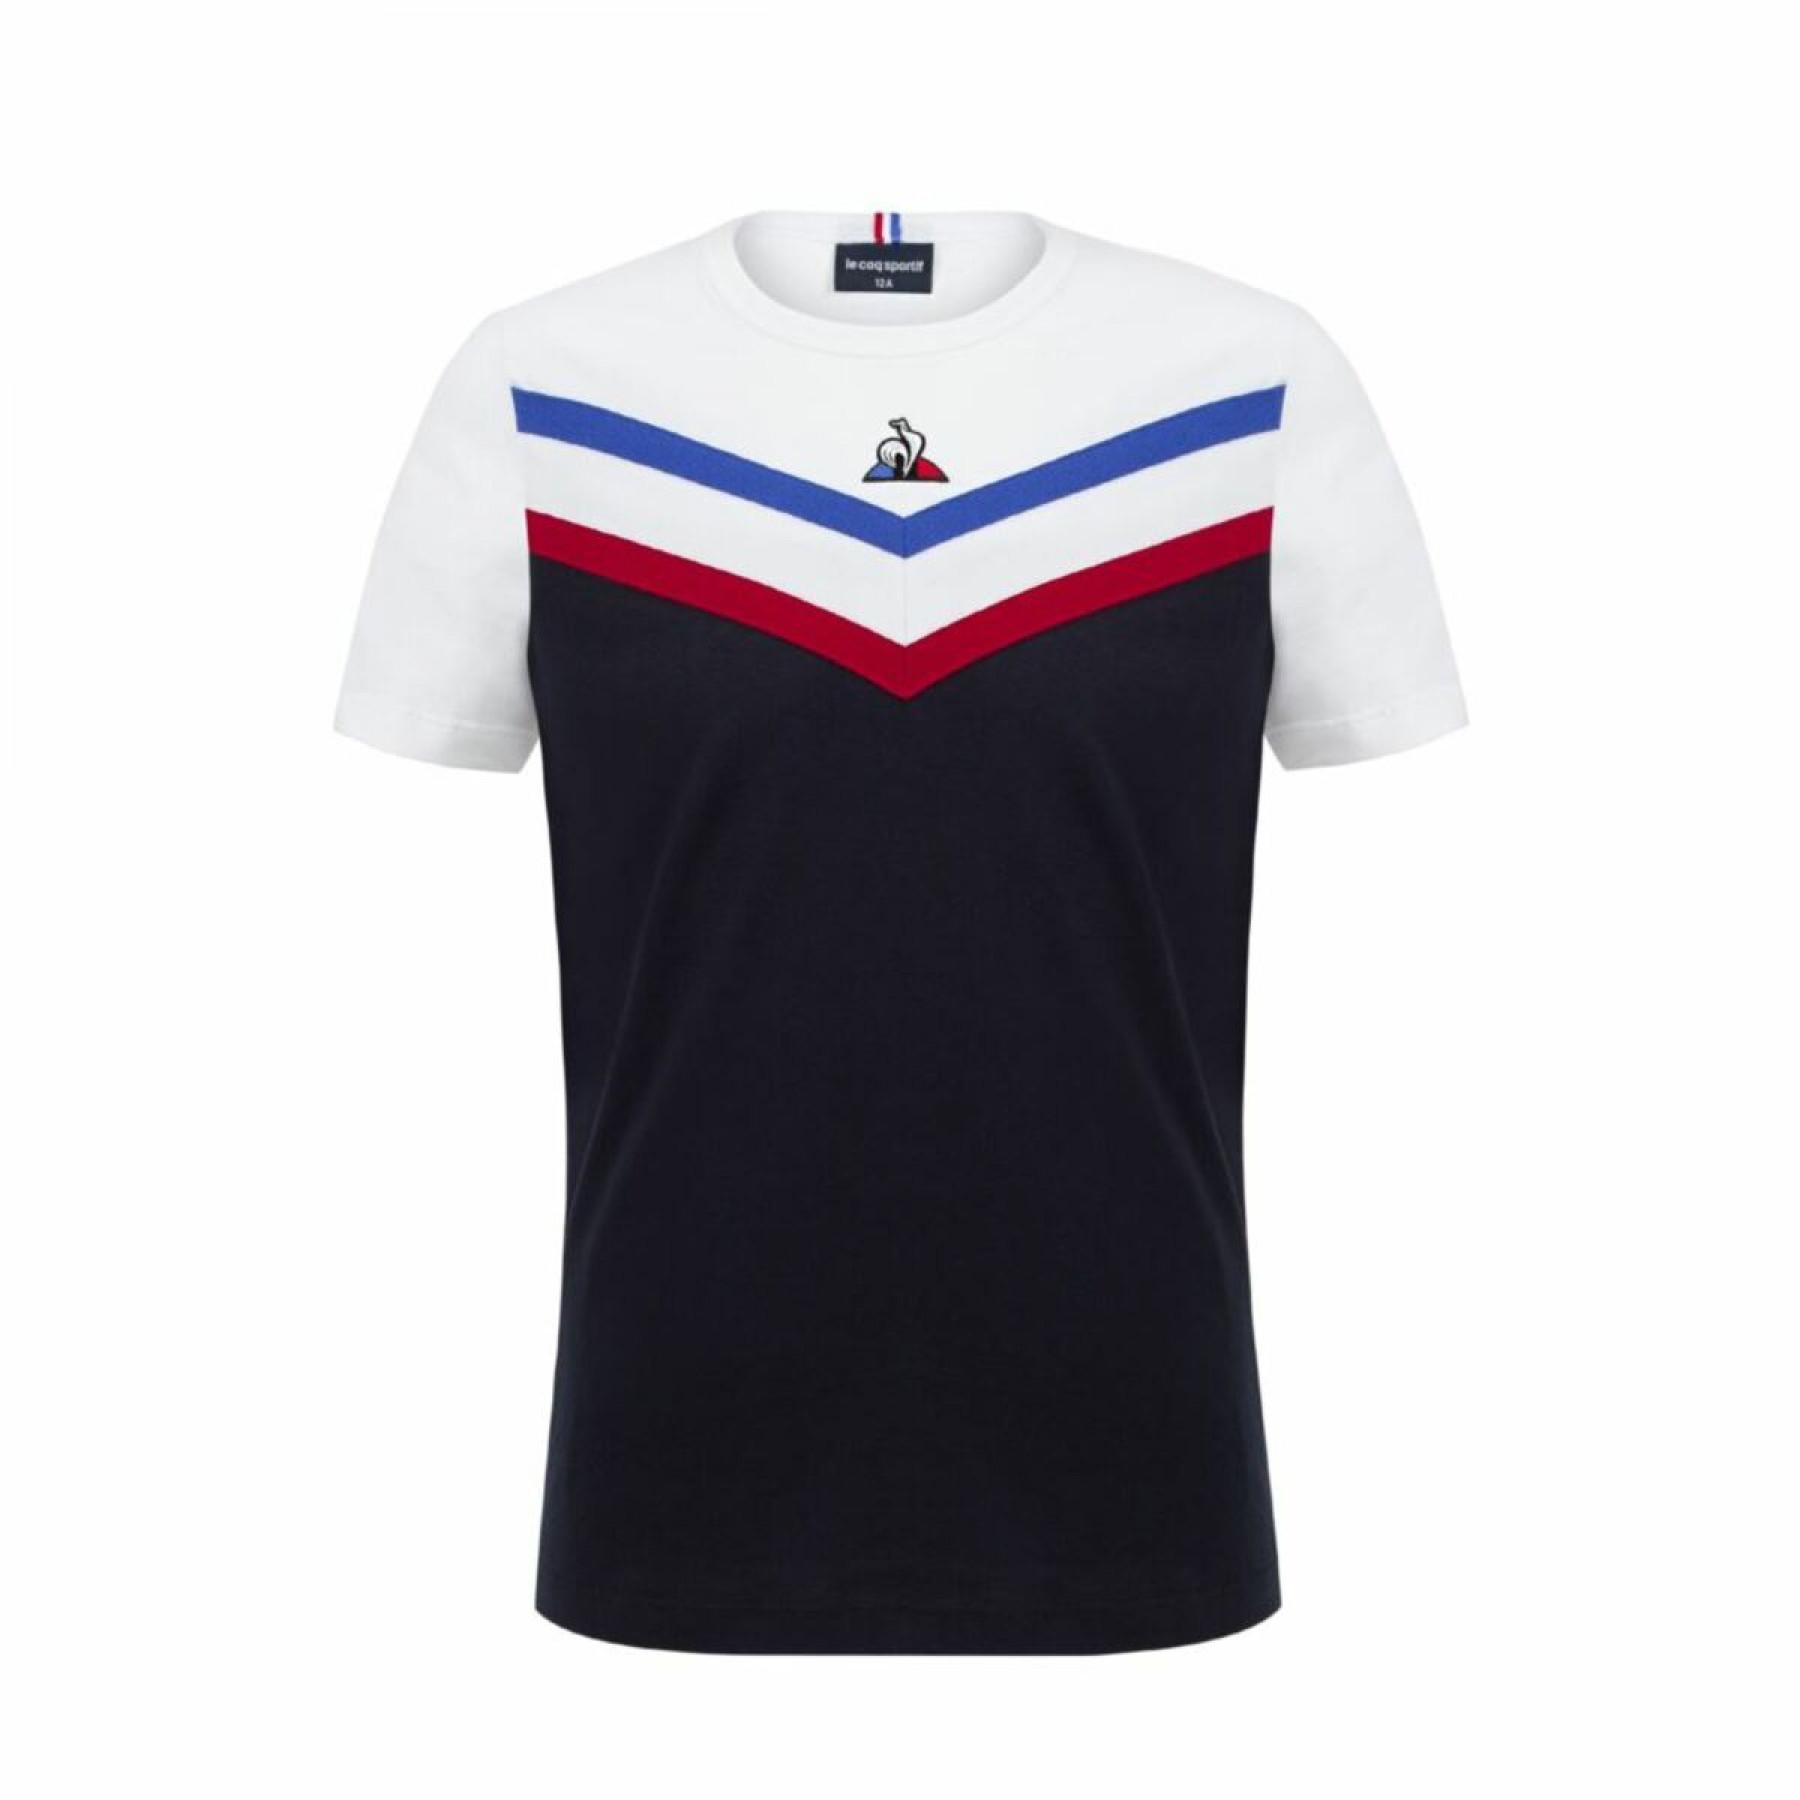 Kinder-T-Shirt Le Coq Sportif tricolore n°1